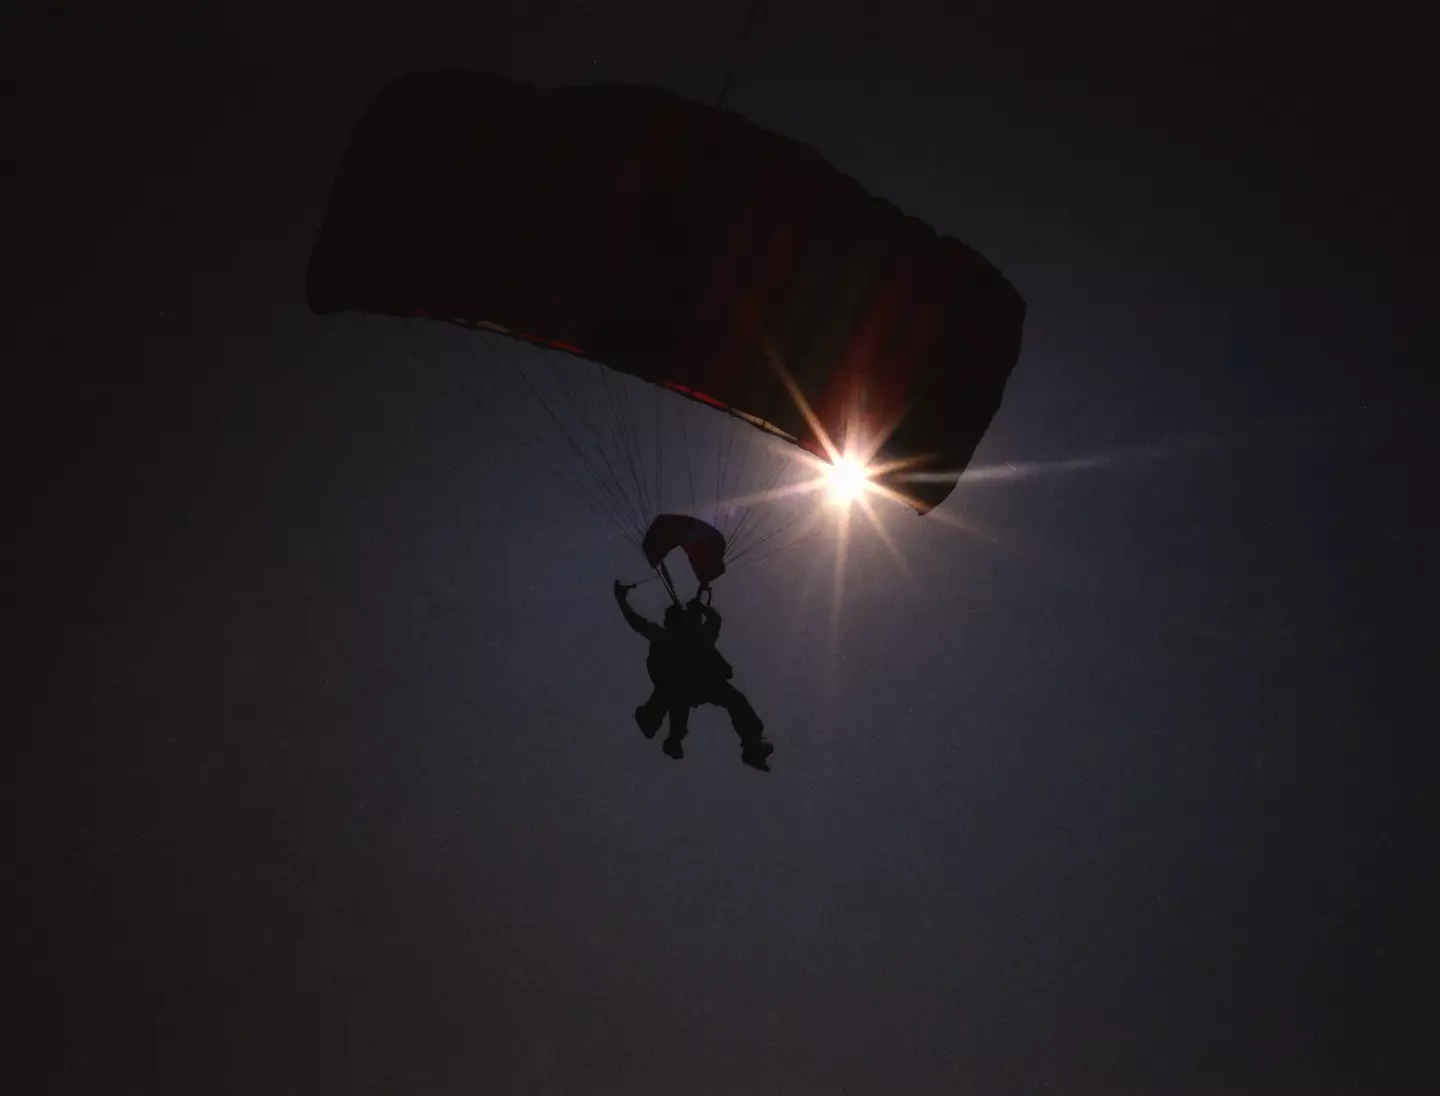 Joan Murray went skydiving in South Carolina.